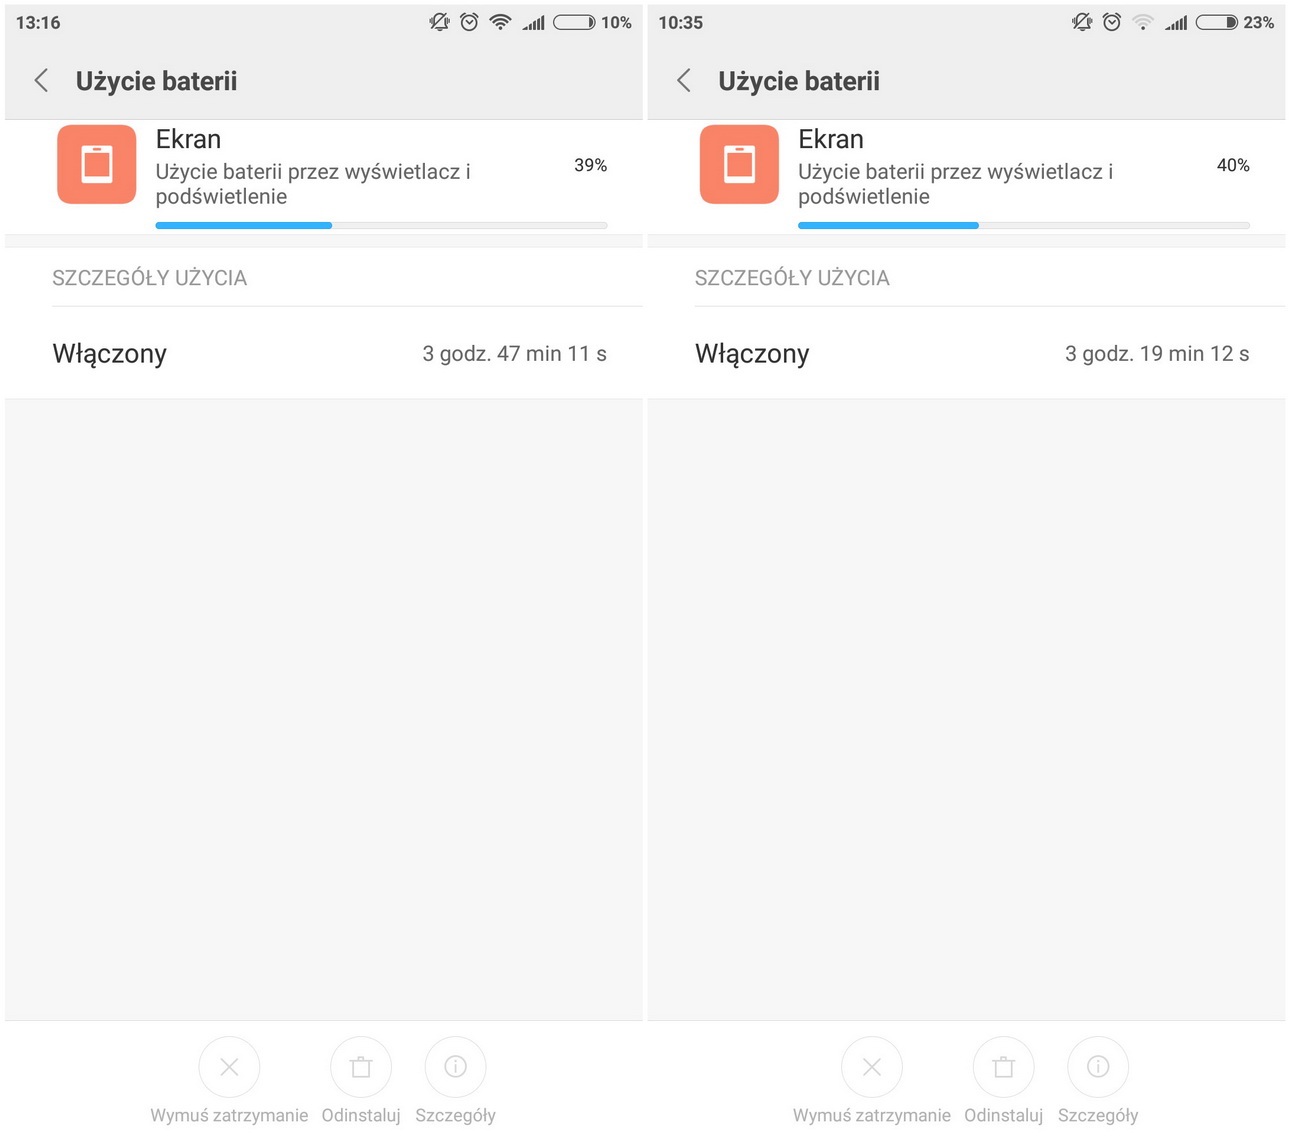 Xiaomi Mi5 - Przykładowe zużycie baterii - recenzja 90sekund.pl